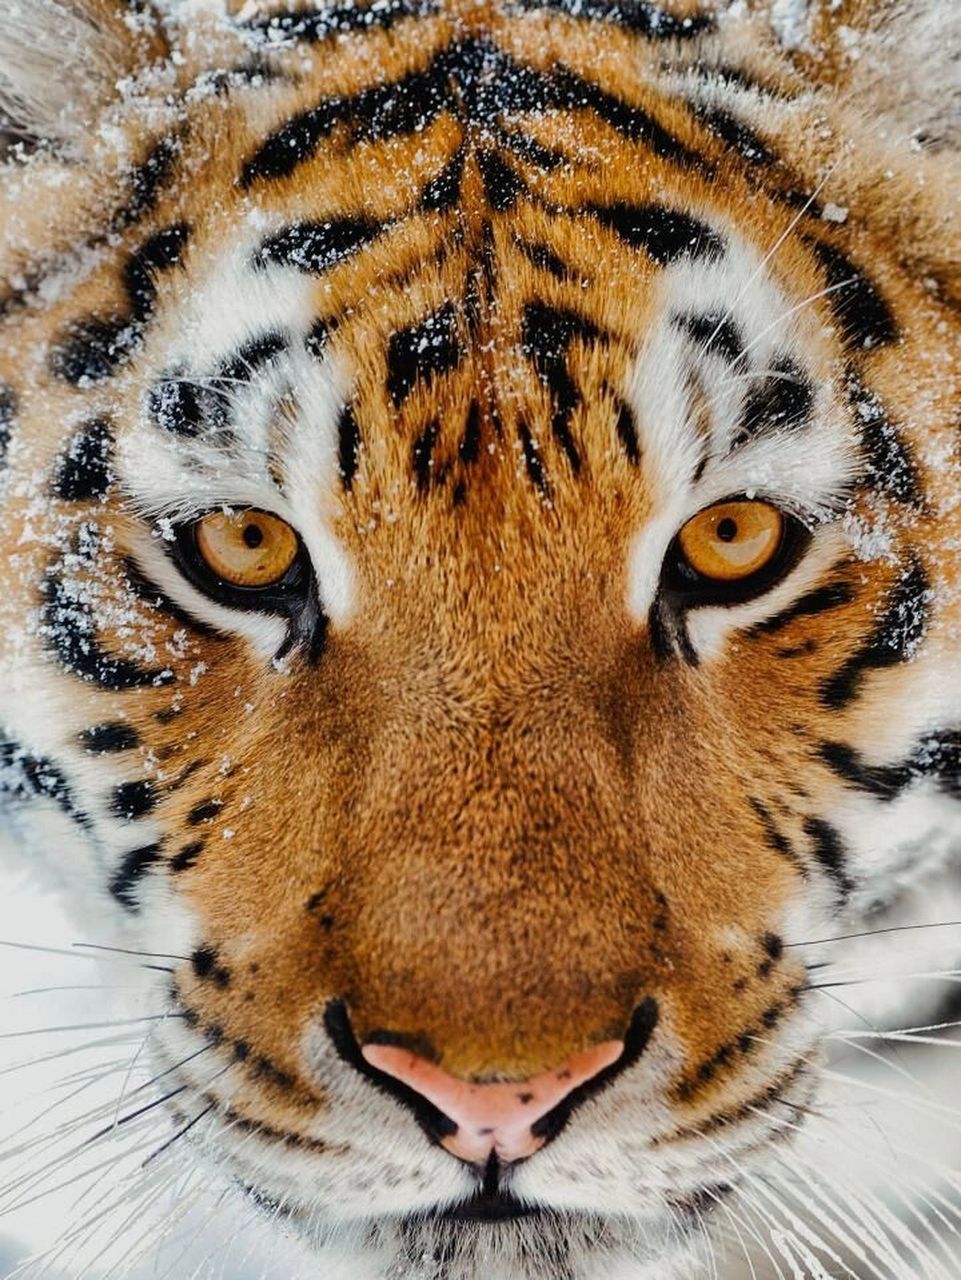 老虎的照片图片霸气图片